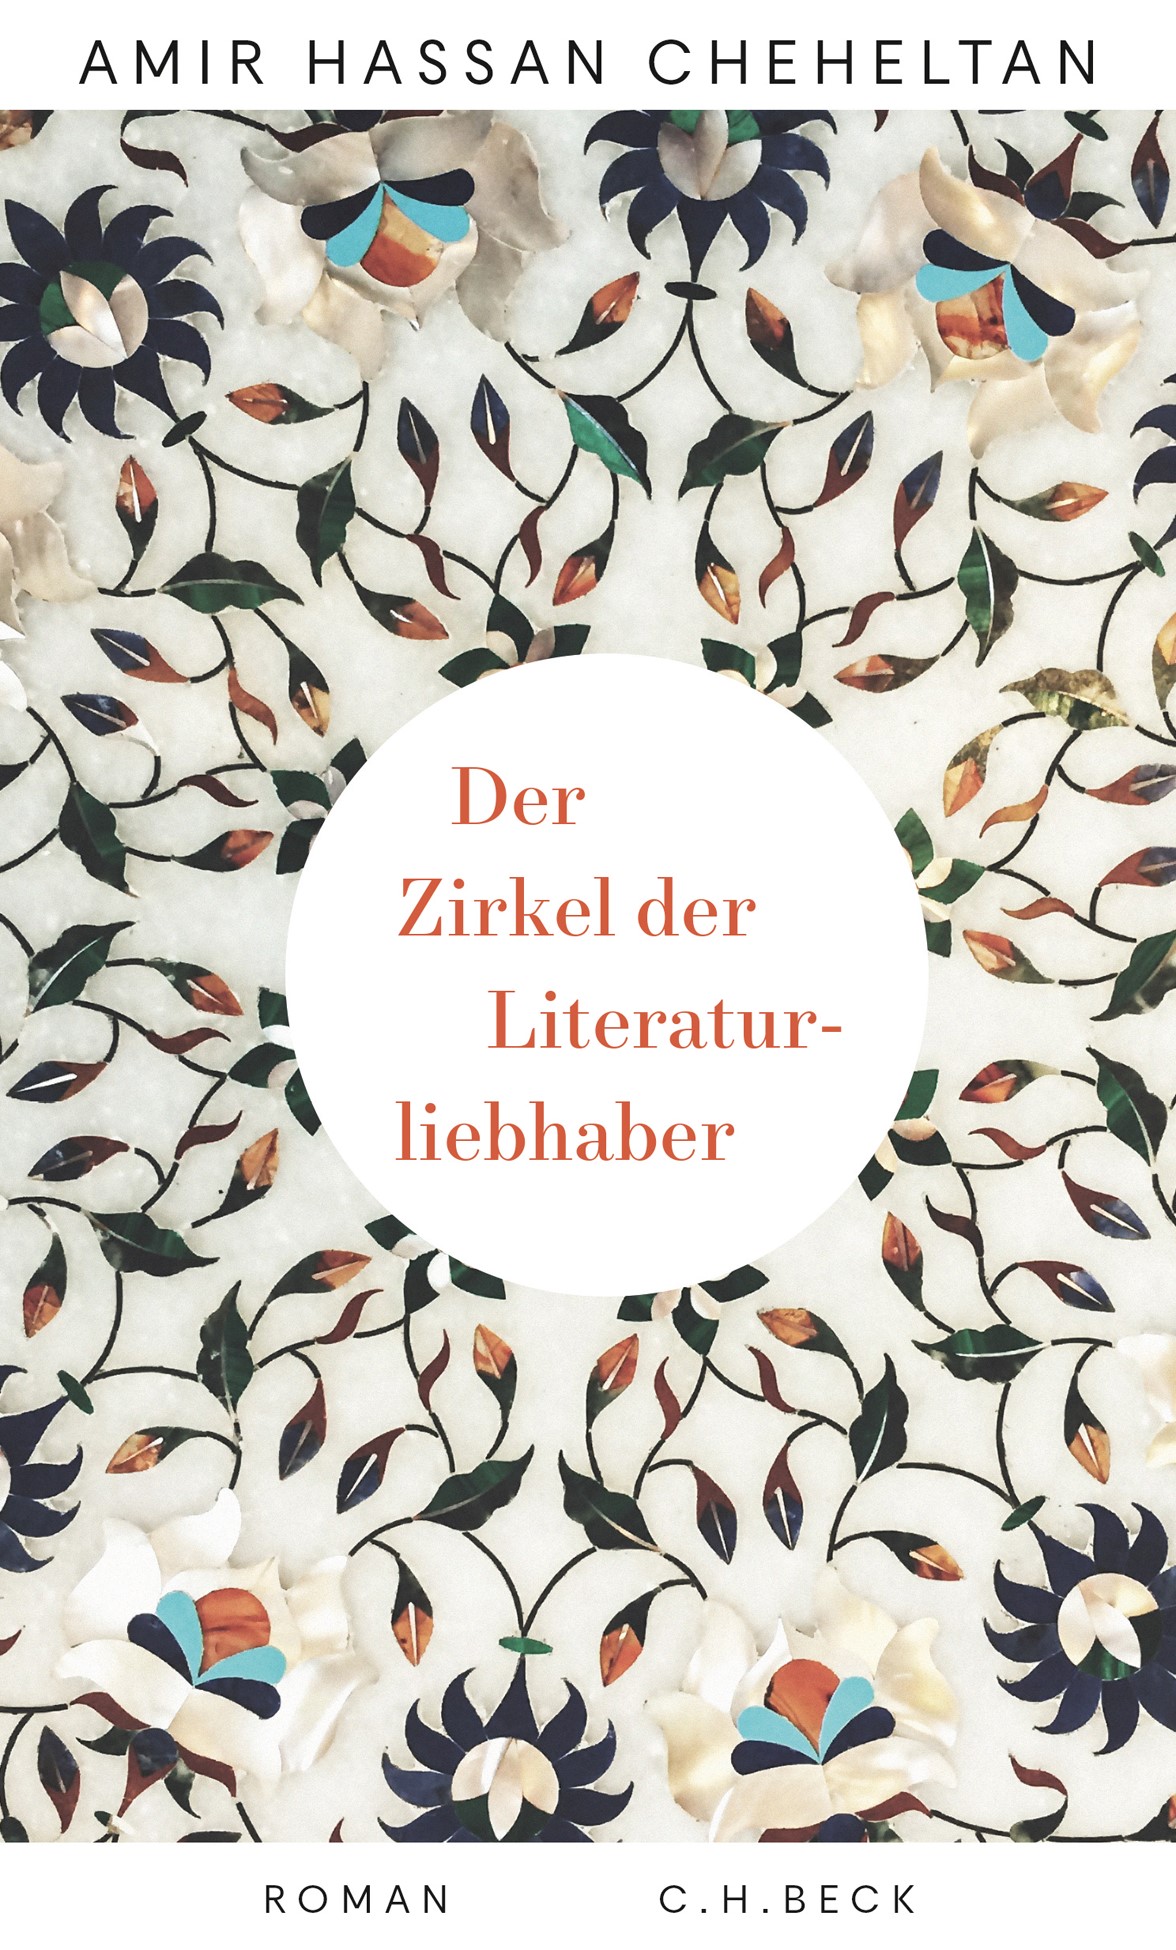 Buchcover Amir Hassan Cheheltan: "Zirkel der Literaturliebhaber" im Verlag C.H. Beck